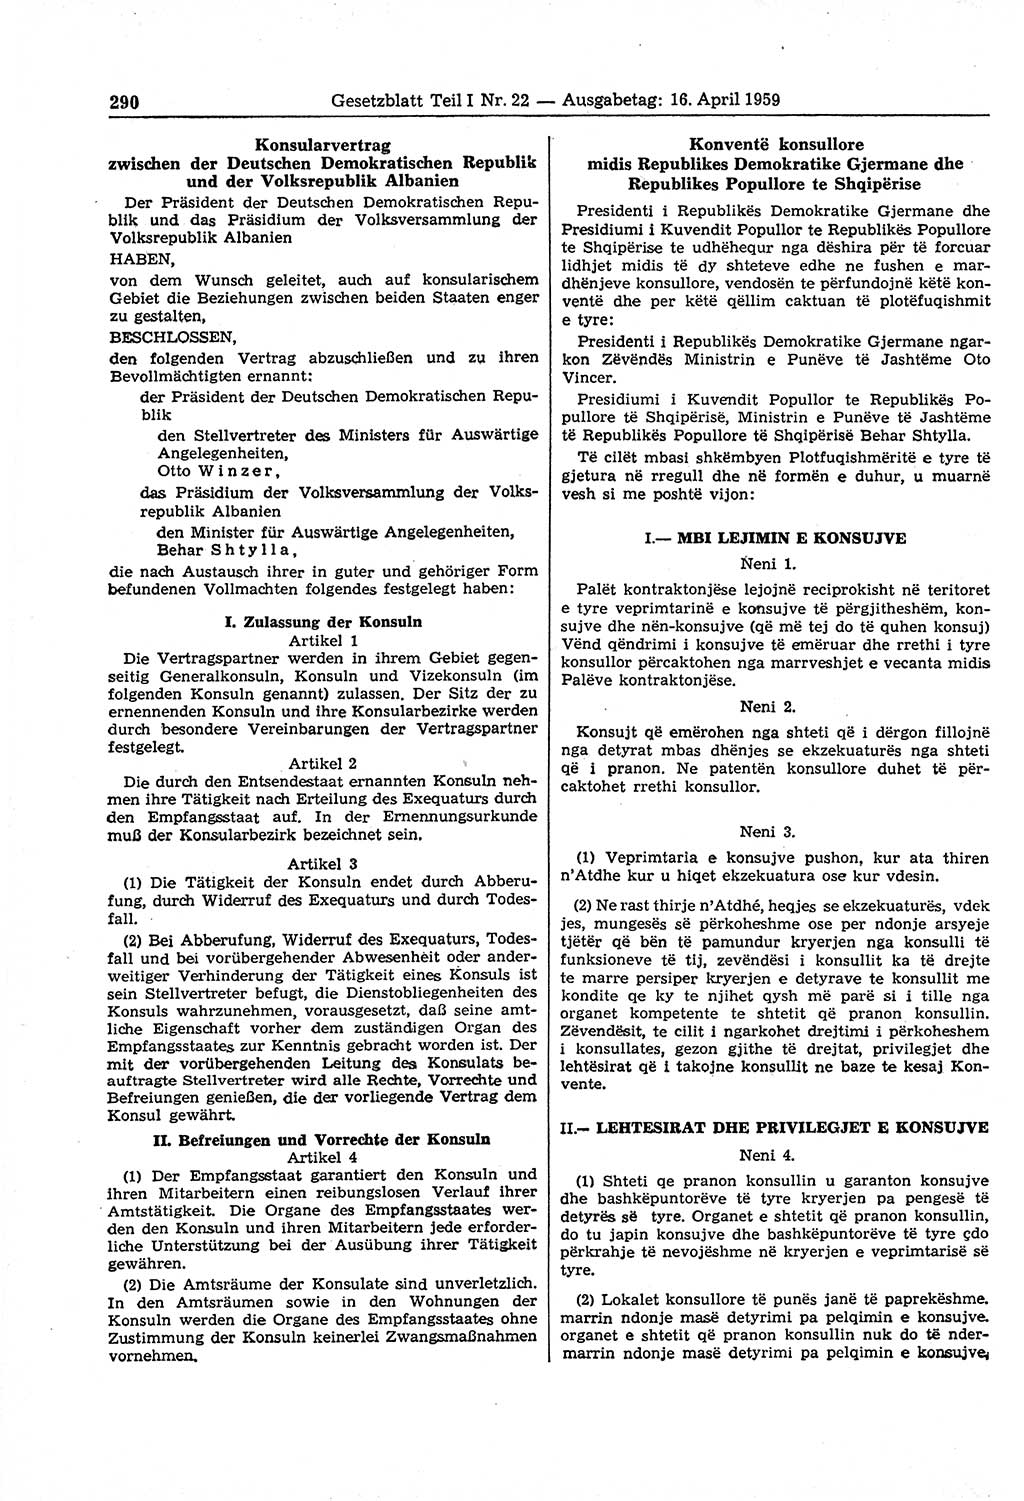 Gesetzblatt (GBl.) der Deutschen Demokratischen Republik (DDR) Teil Ⅰ 1959, Seite 290 (GBl. DDR Ⅰ 1959, S. 290)